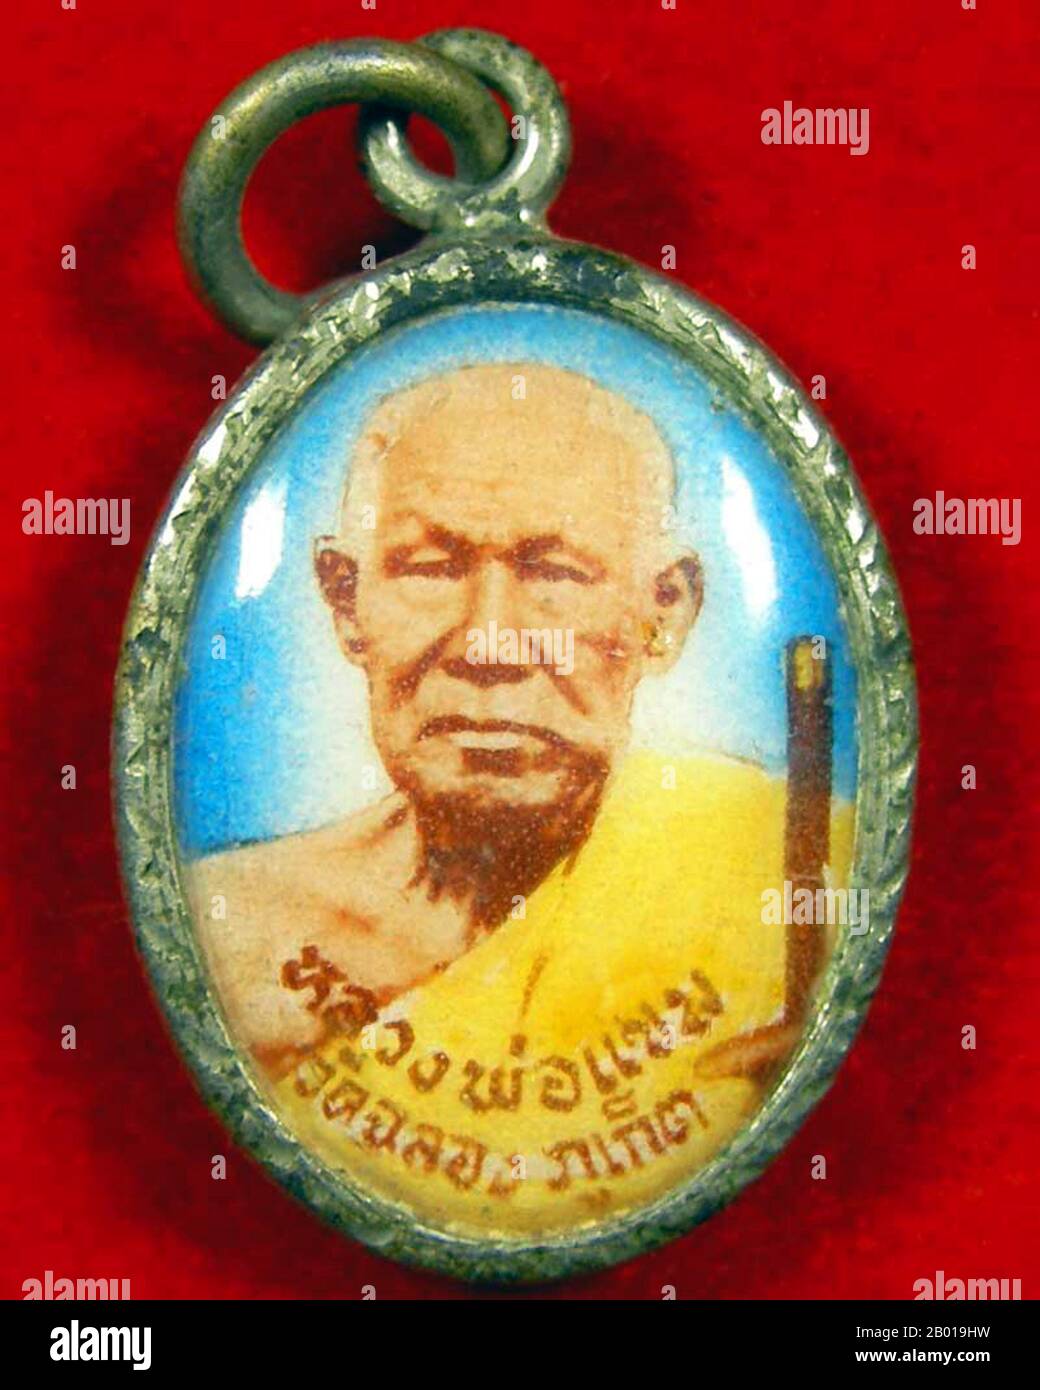 Thailand: Ein Amulett von Luang Pho Chaem, dem ehrwürdigen Mönch von Wat Chalong, Phuket. Wat Chalong im Chalong Distrikt von Phuket wird von zwei hochehrwürdigen Mönchen, Luang Pho Chaem und Luang Pho Chuang, die für ihre Arbeit in der Kräutermedizin und die Pflege von Kranken berühmt waren, verführt. Während des Aufstands der Zinnminenarbeiter in Phuket im Jahr 1876 mobilisierten sie auf beiden Seiten Hilfe für die Verletzten. Sie vermittelten auch in der Rebellion und brachten die Kriegsparteien zusammen, um ihren Streit zu lösen. Statuen, die sie ehren, stehen in der Predigthalle (Viharn) des Wat Chalong. Stockfoto